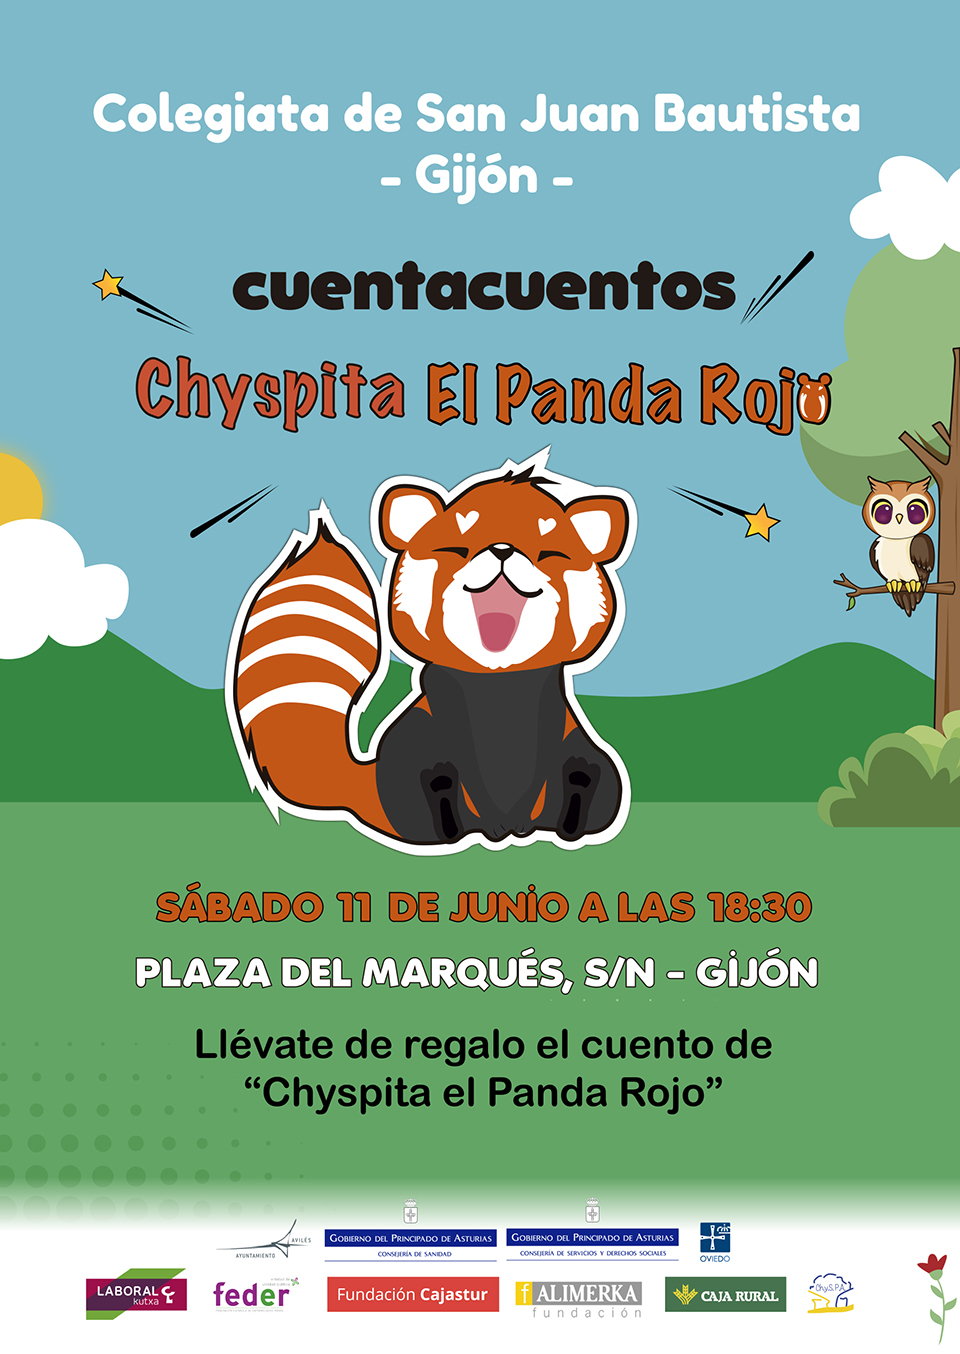 Cuentacuento Chyspita el panda rojo en Gijón, en Colegiata de San Juan Bautista el 11 de junio a las 18:30h